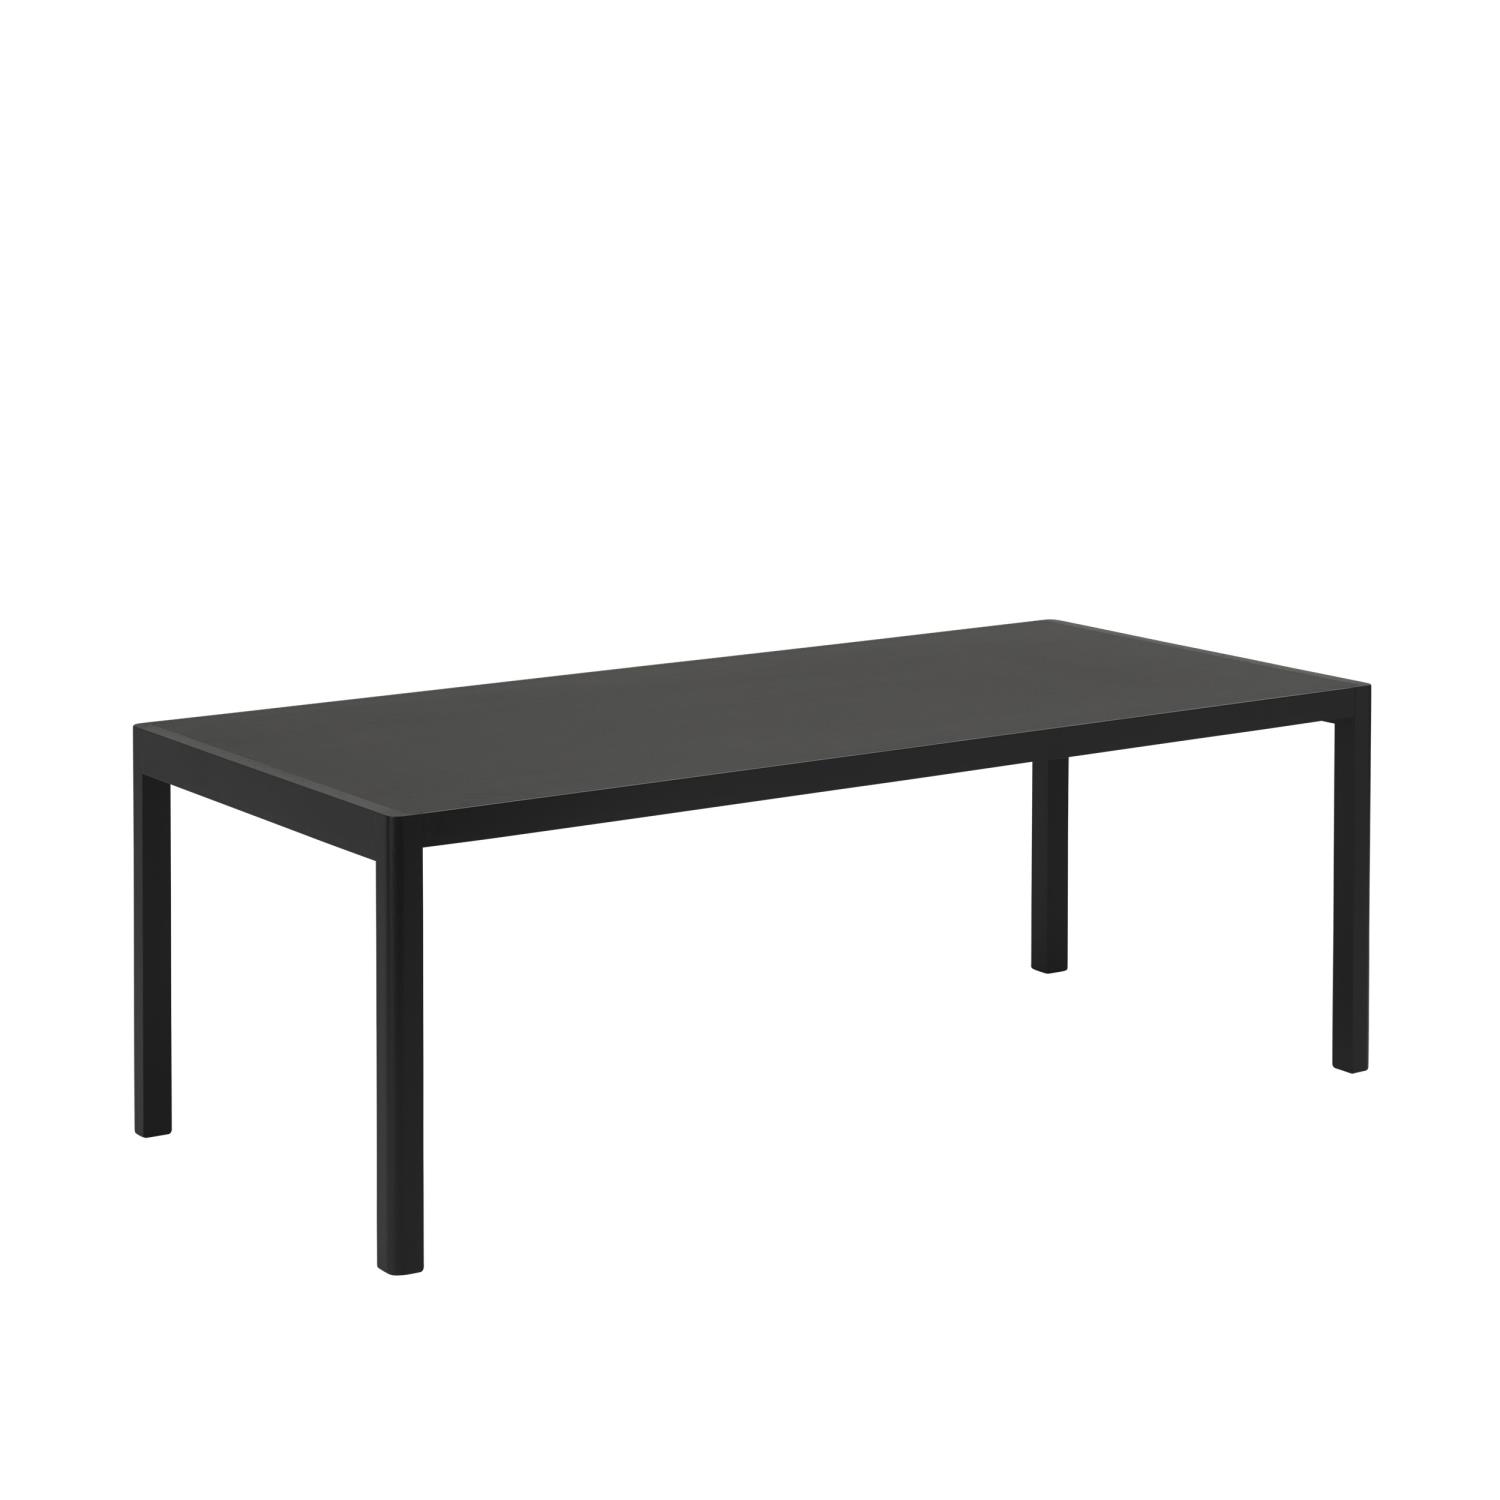 Muuto - Workshop Table - 200x92 - Black Linoleum and Black